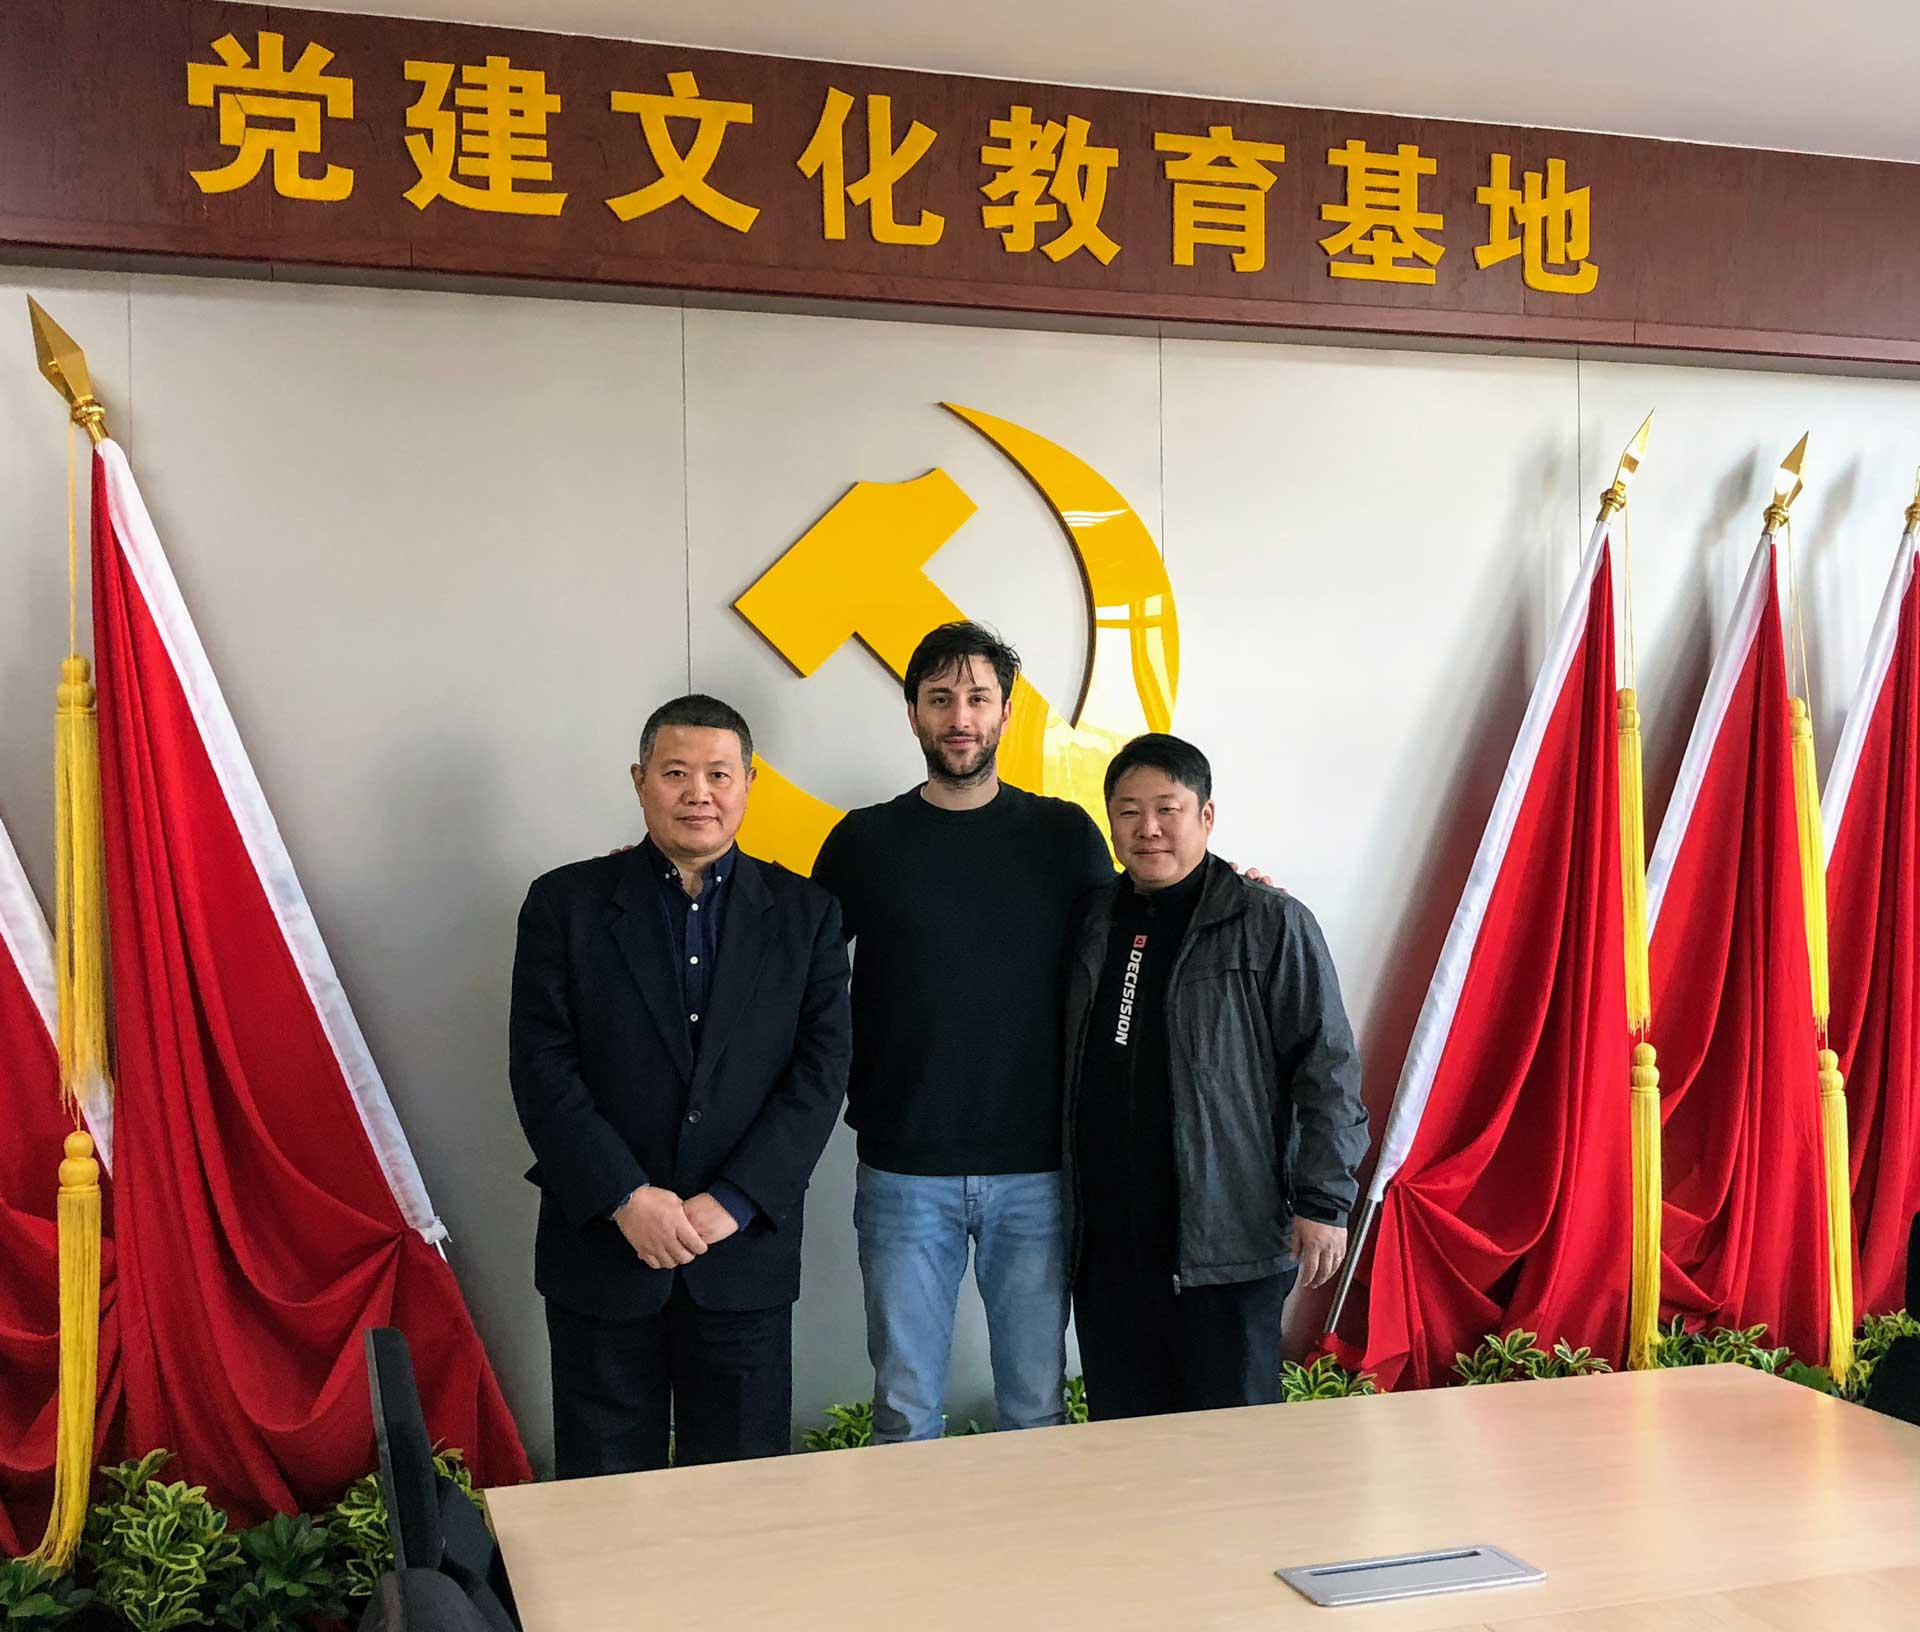 Stefano Cornacchia in Cina, ospite speciale di Tianjin al Mondiale per Club del 2019